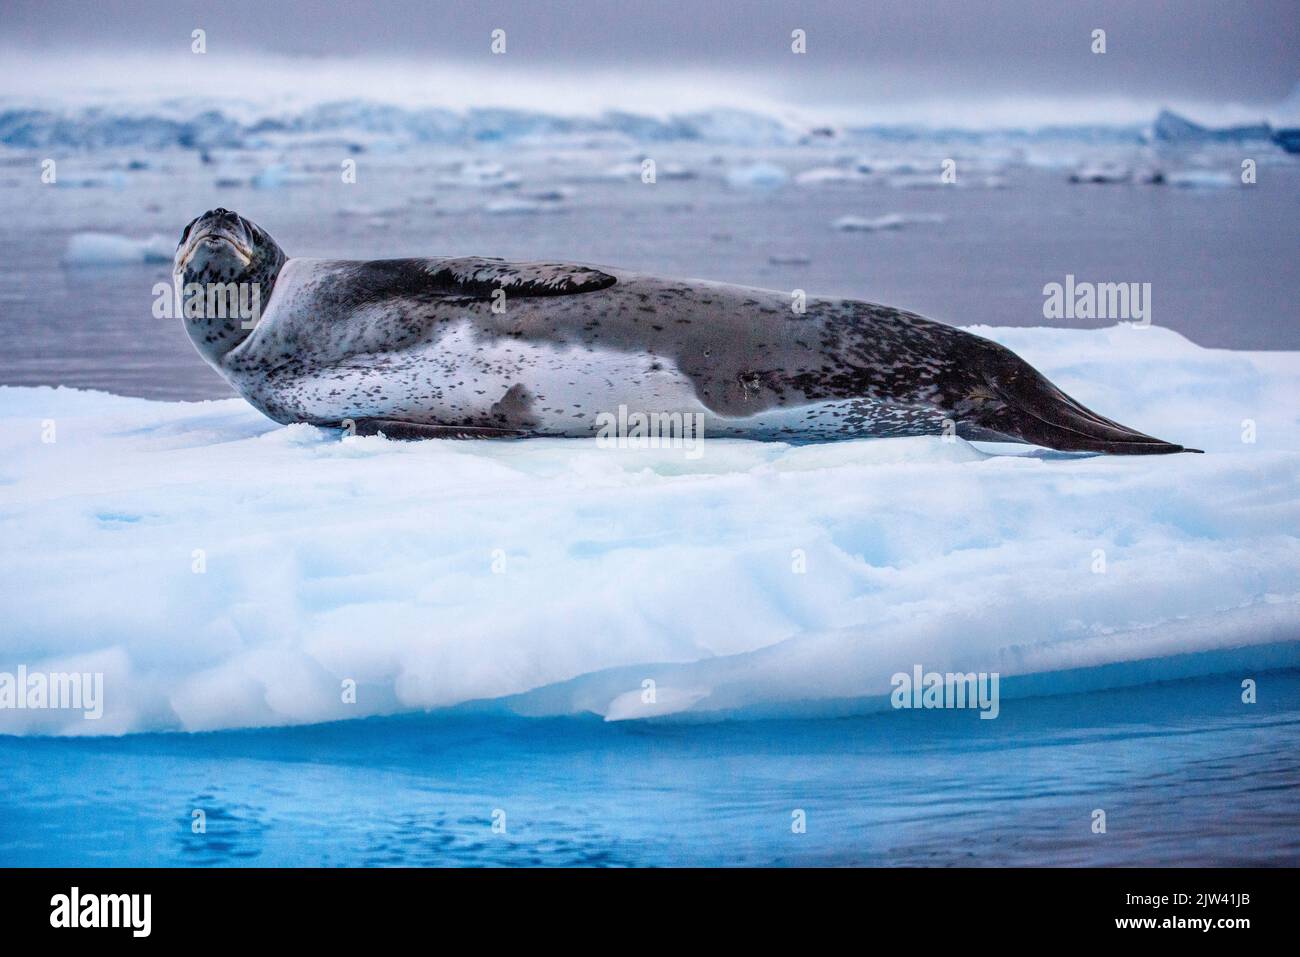 Portrait d'un phoque léopard, Hydrurga leptonyx, reposant sur un floe de glace. Fusion des pôles. L'Antarctique est le continent qui souffre le plus de glob Banque D'Images